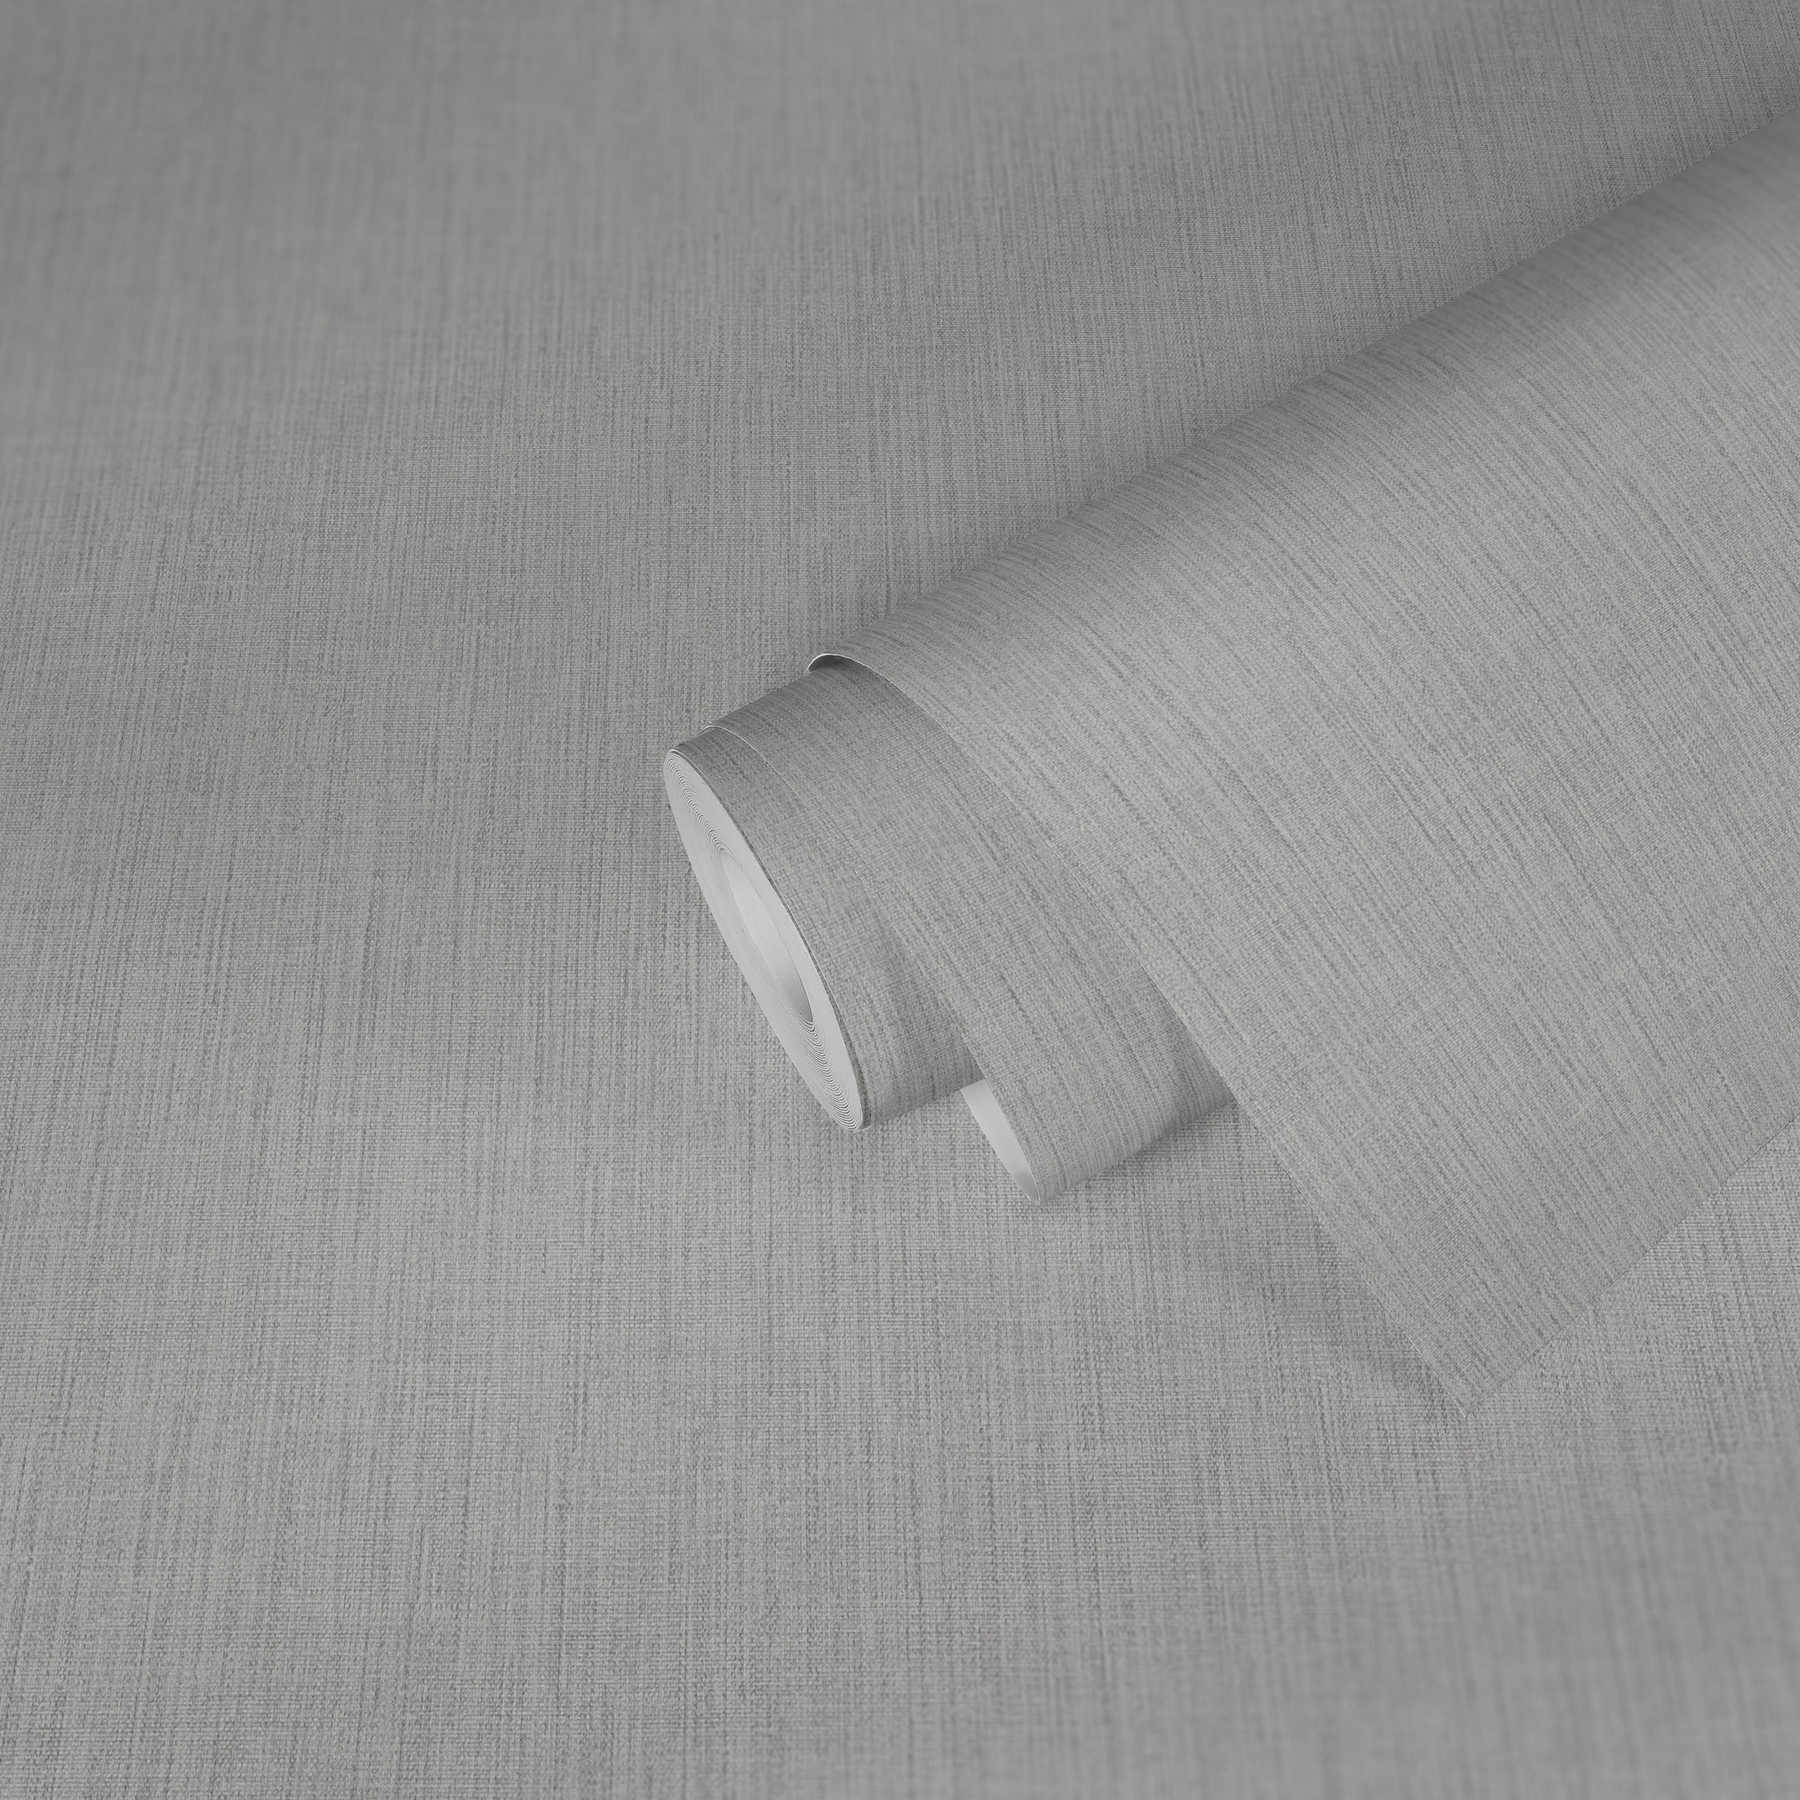             Carta da parati in tessuto non tessuto effetto lino con motivi tono su tono - rosa, grigio, bianco
        